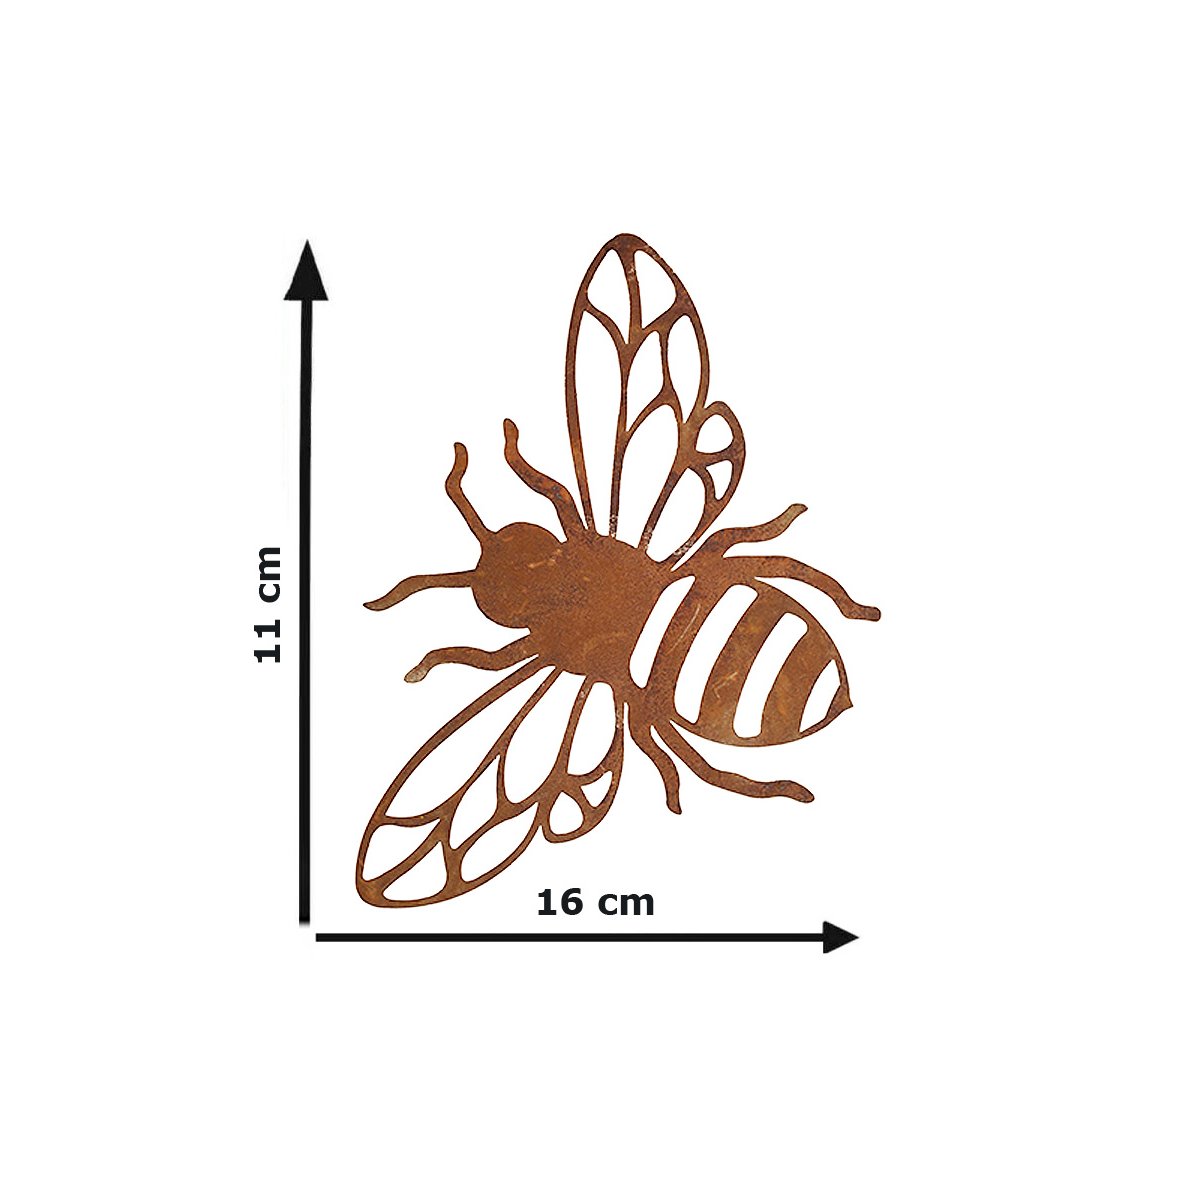 Gar 3 Größen Dekofigur Biene im Rost Design 3er Set Rostfigur für den Garten